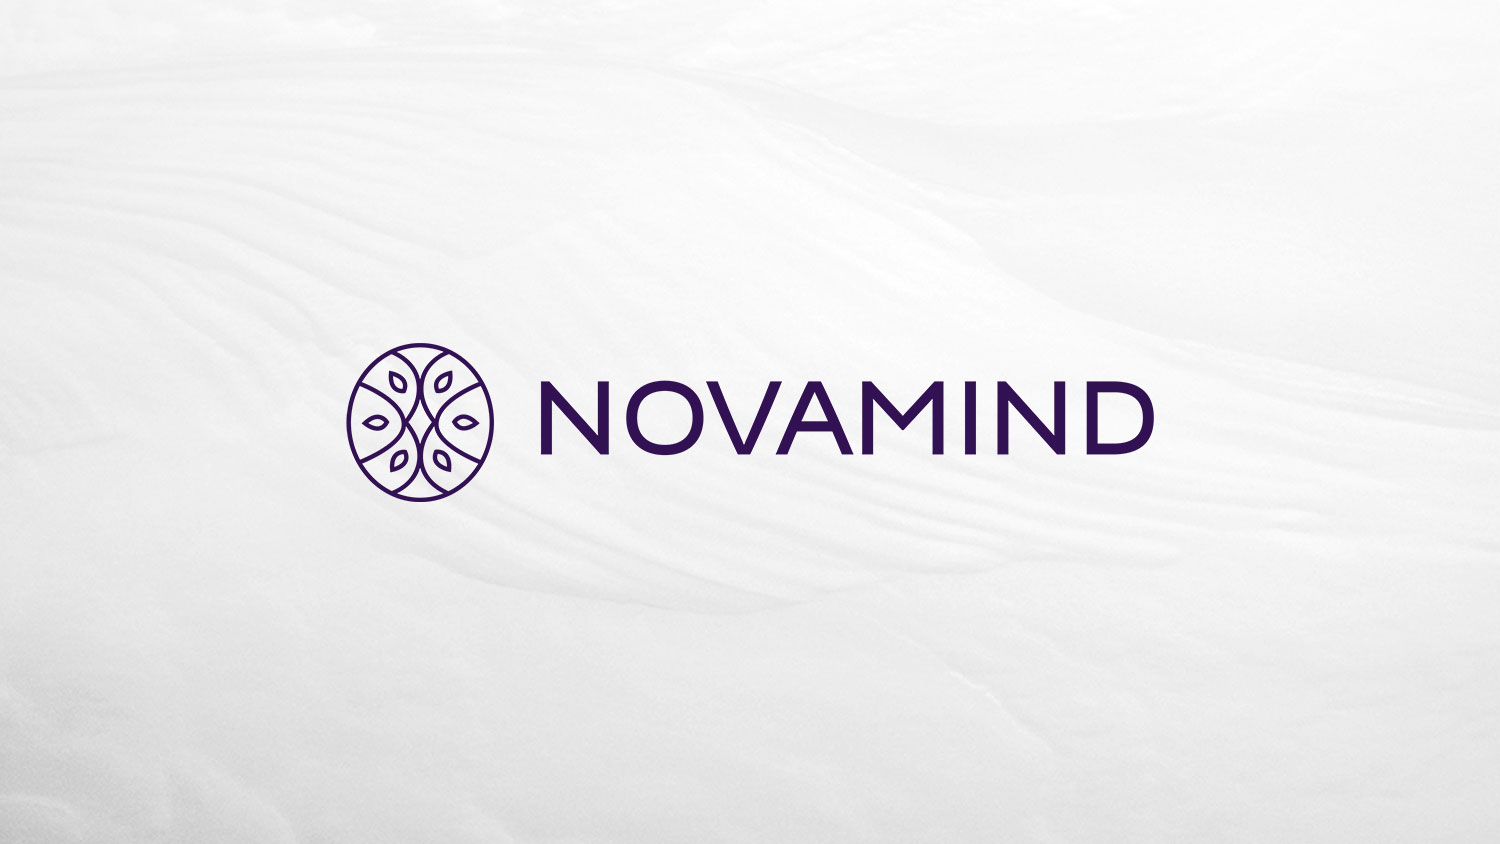 novamind stock